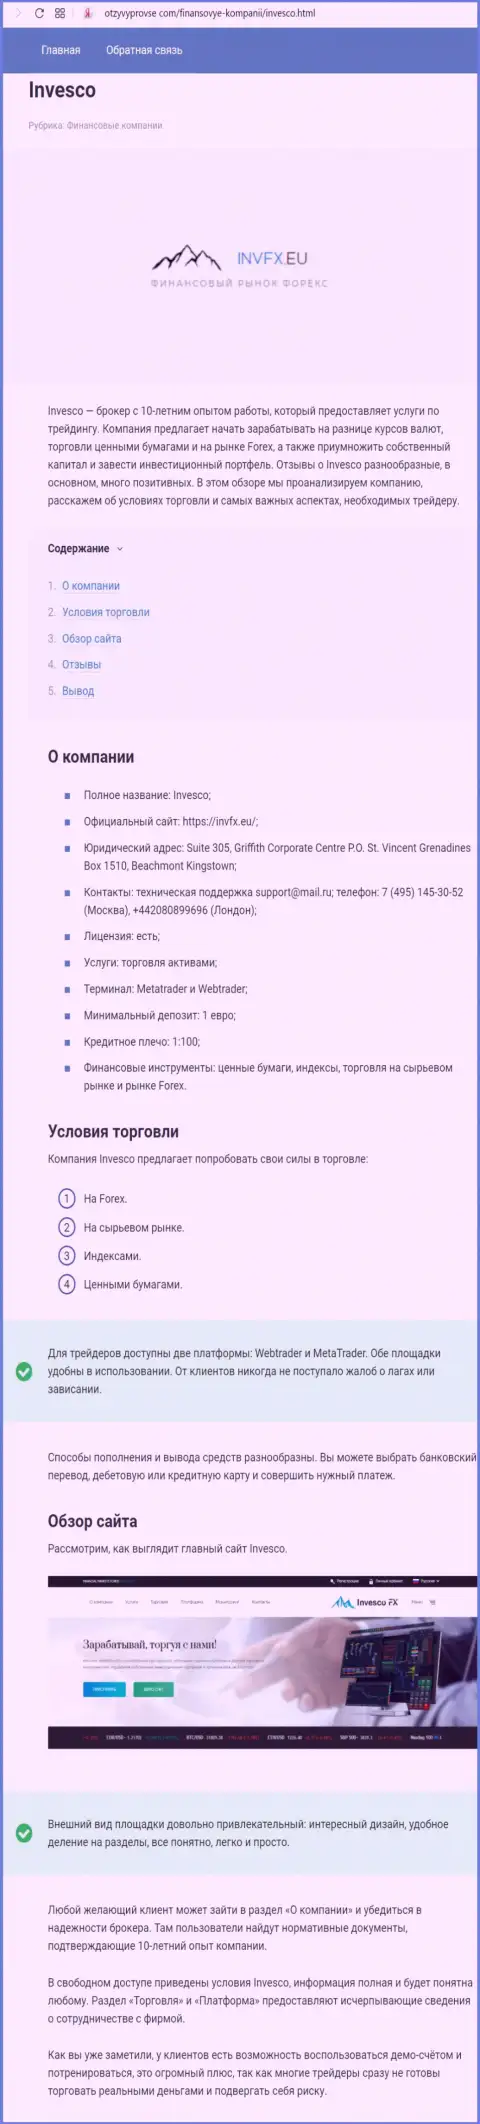 Подробная информация об Форекс брокерской организации ИНВФХ Еу на страницах веб-сайта otzyvyprovse com